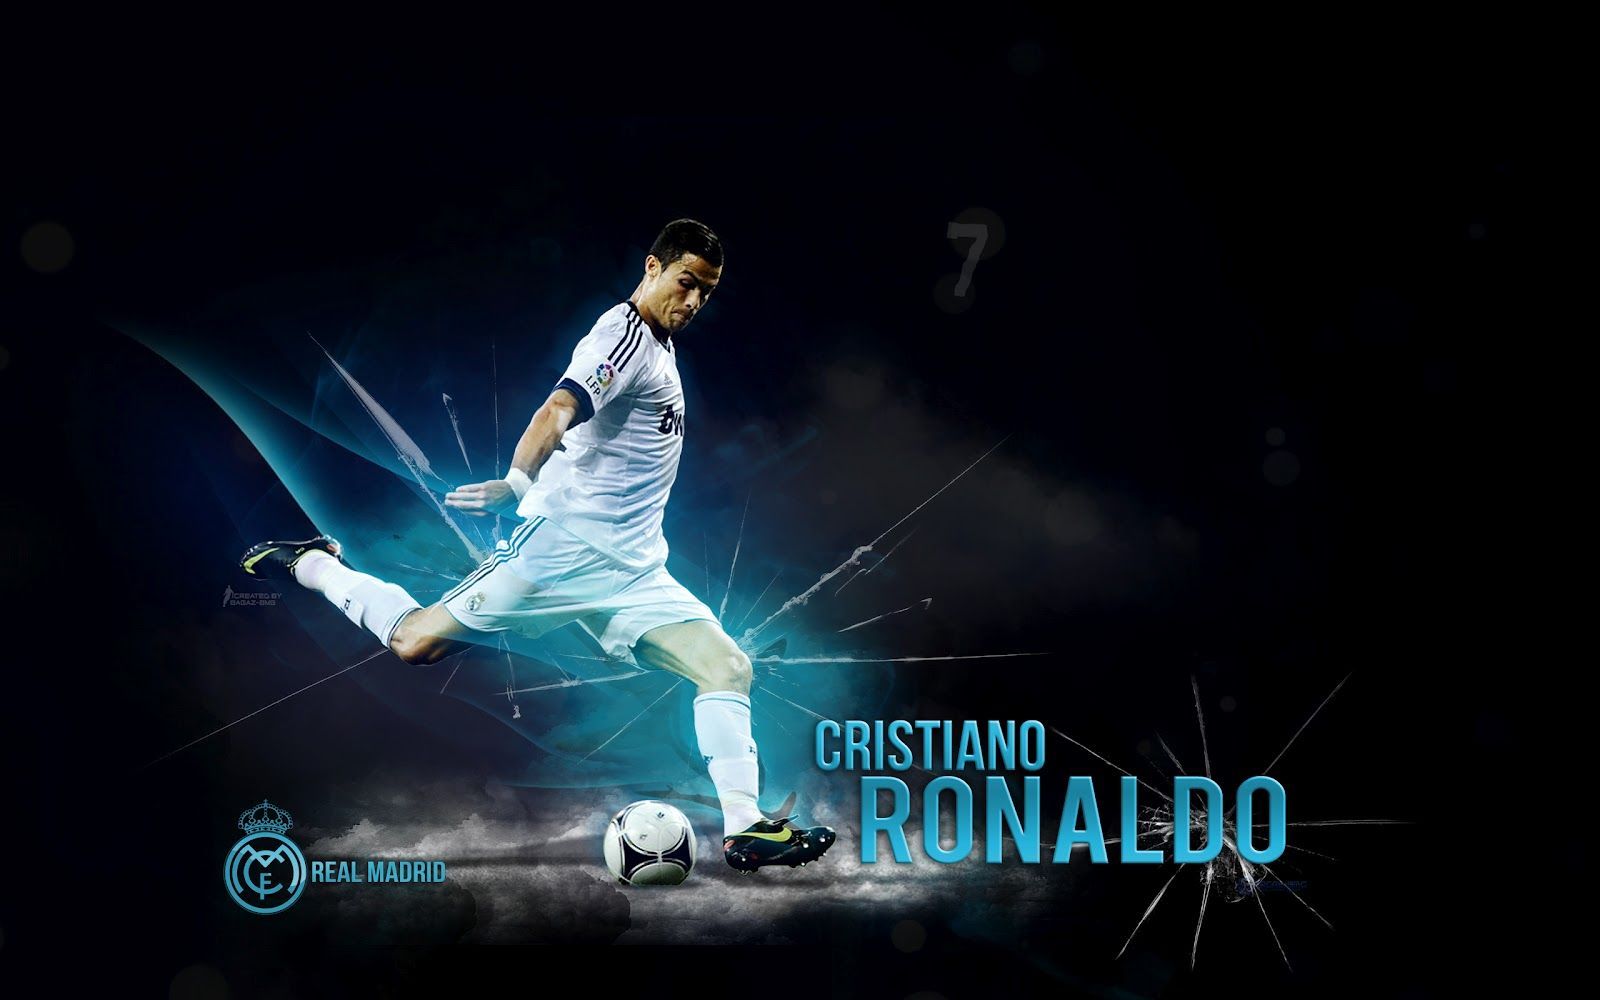 SD Cristiano Ronaldo 1 2